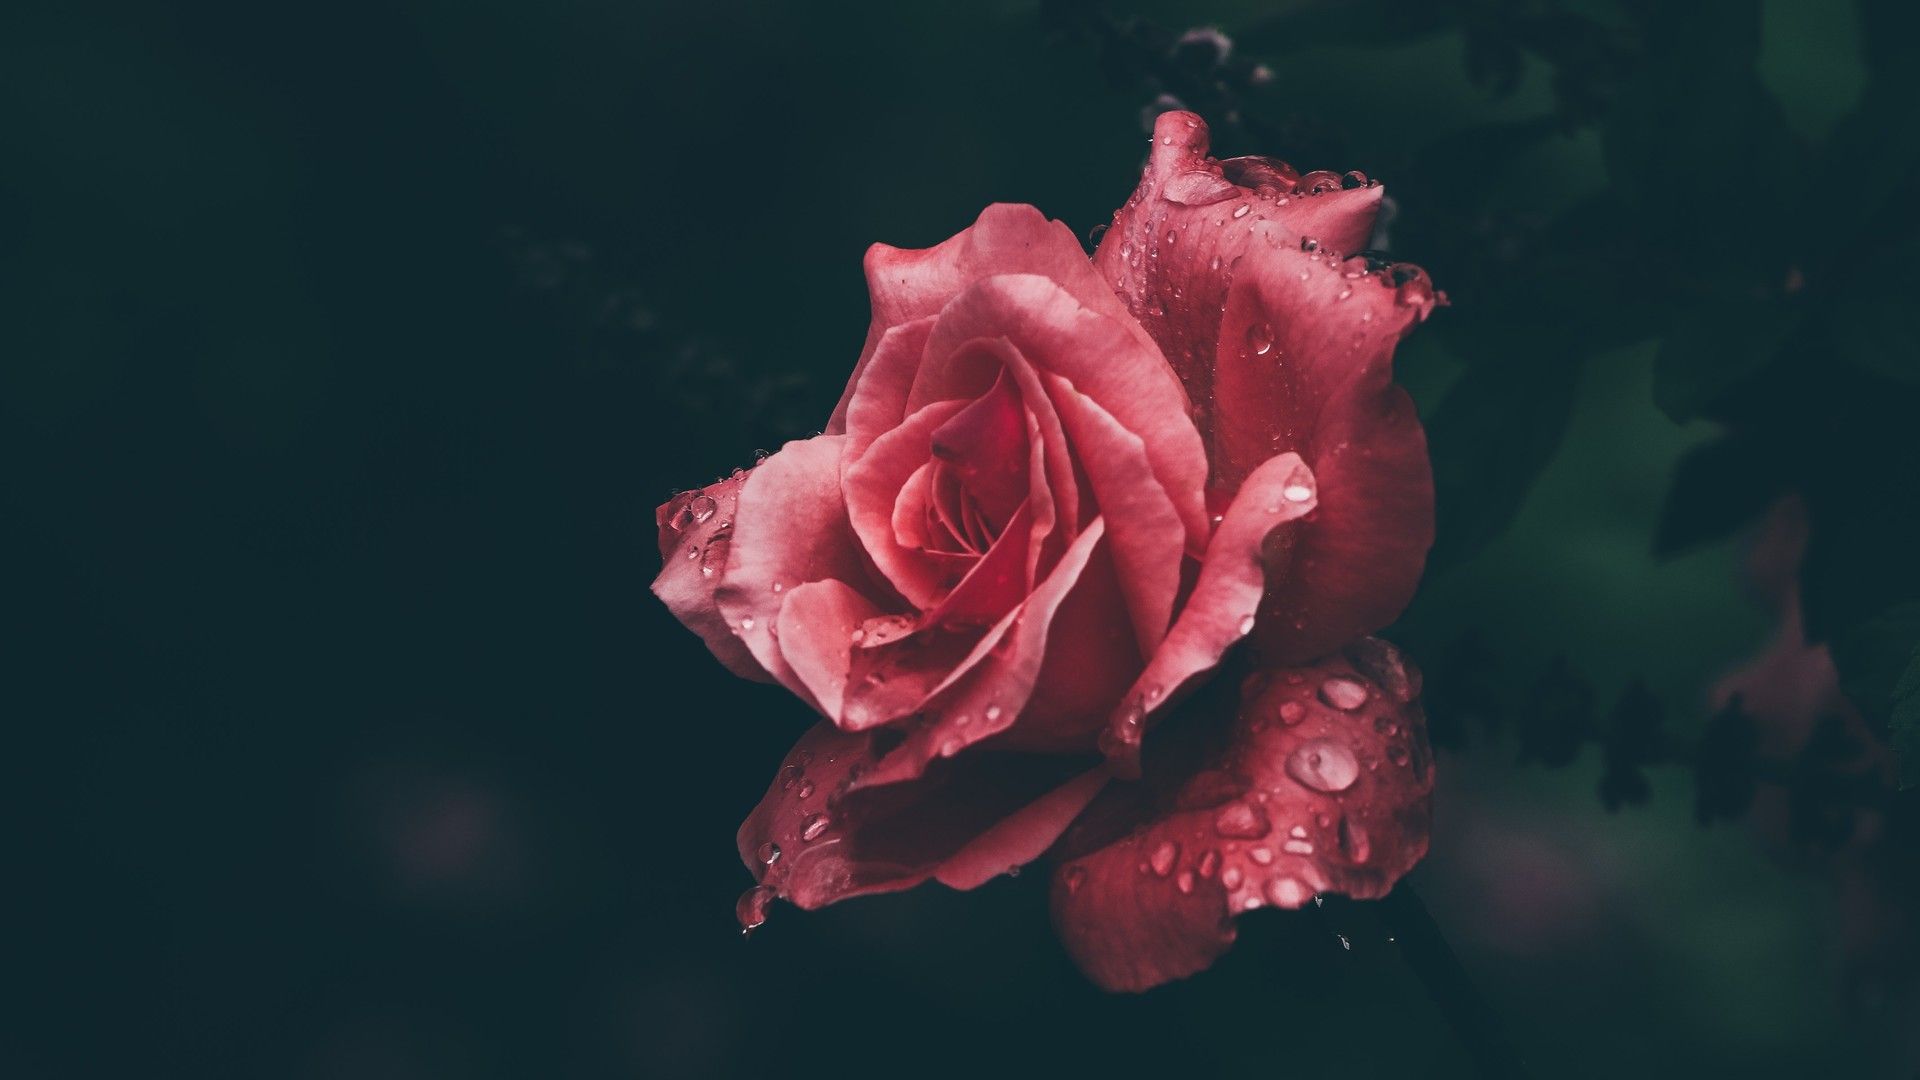 娇艳欲滴的玫瑰花象征彼此爱情桌面图片壁纸